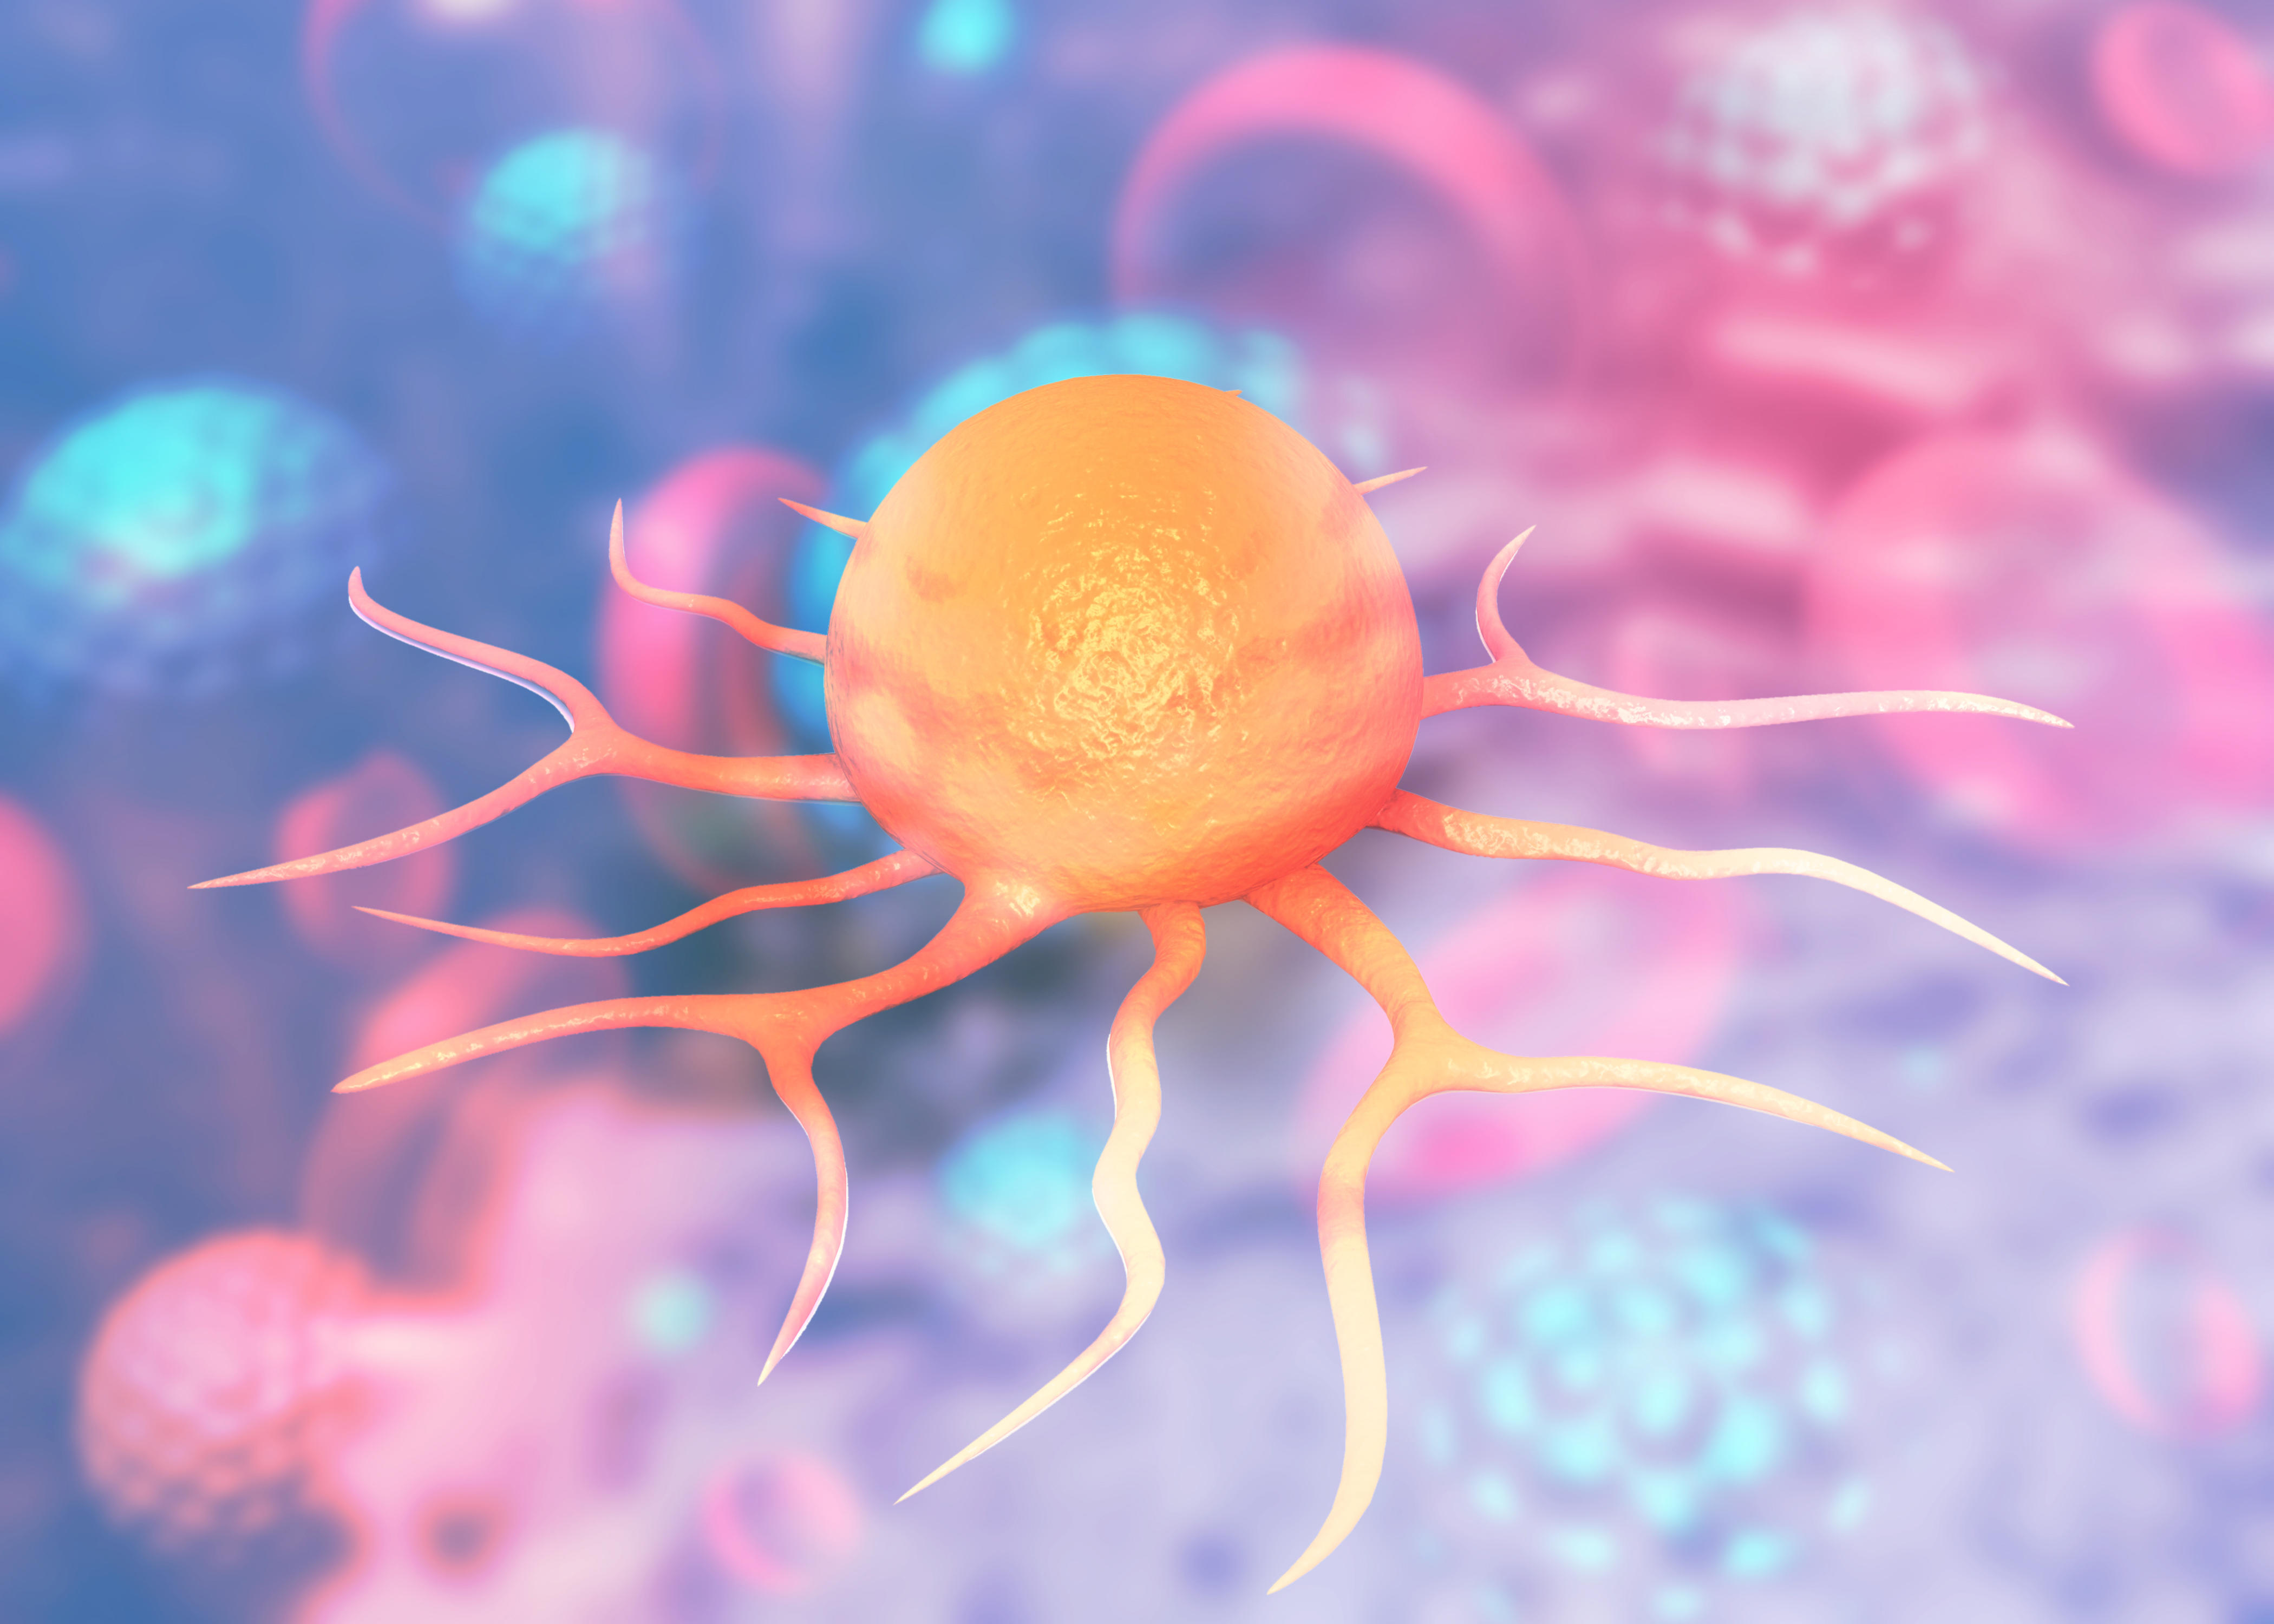 A 3D illustration of cancer cells